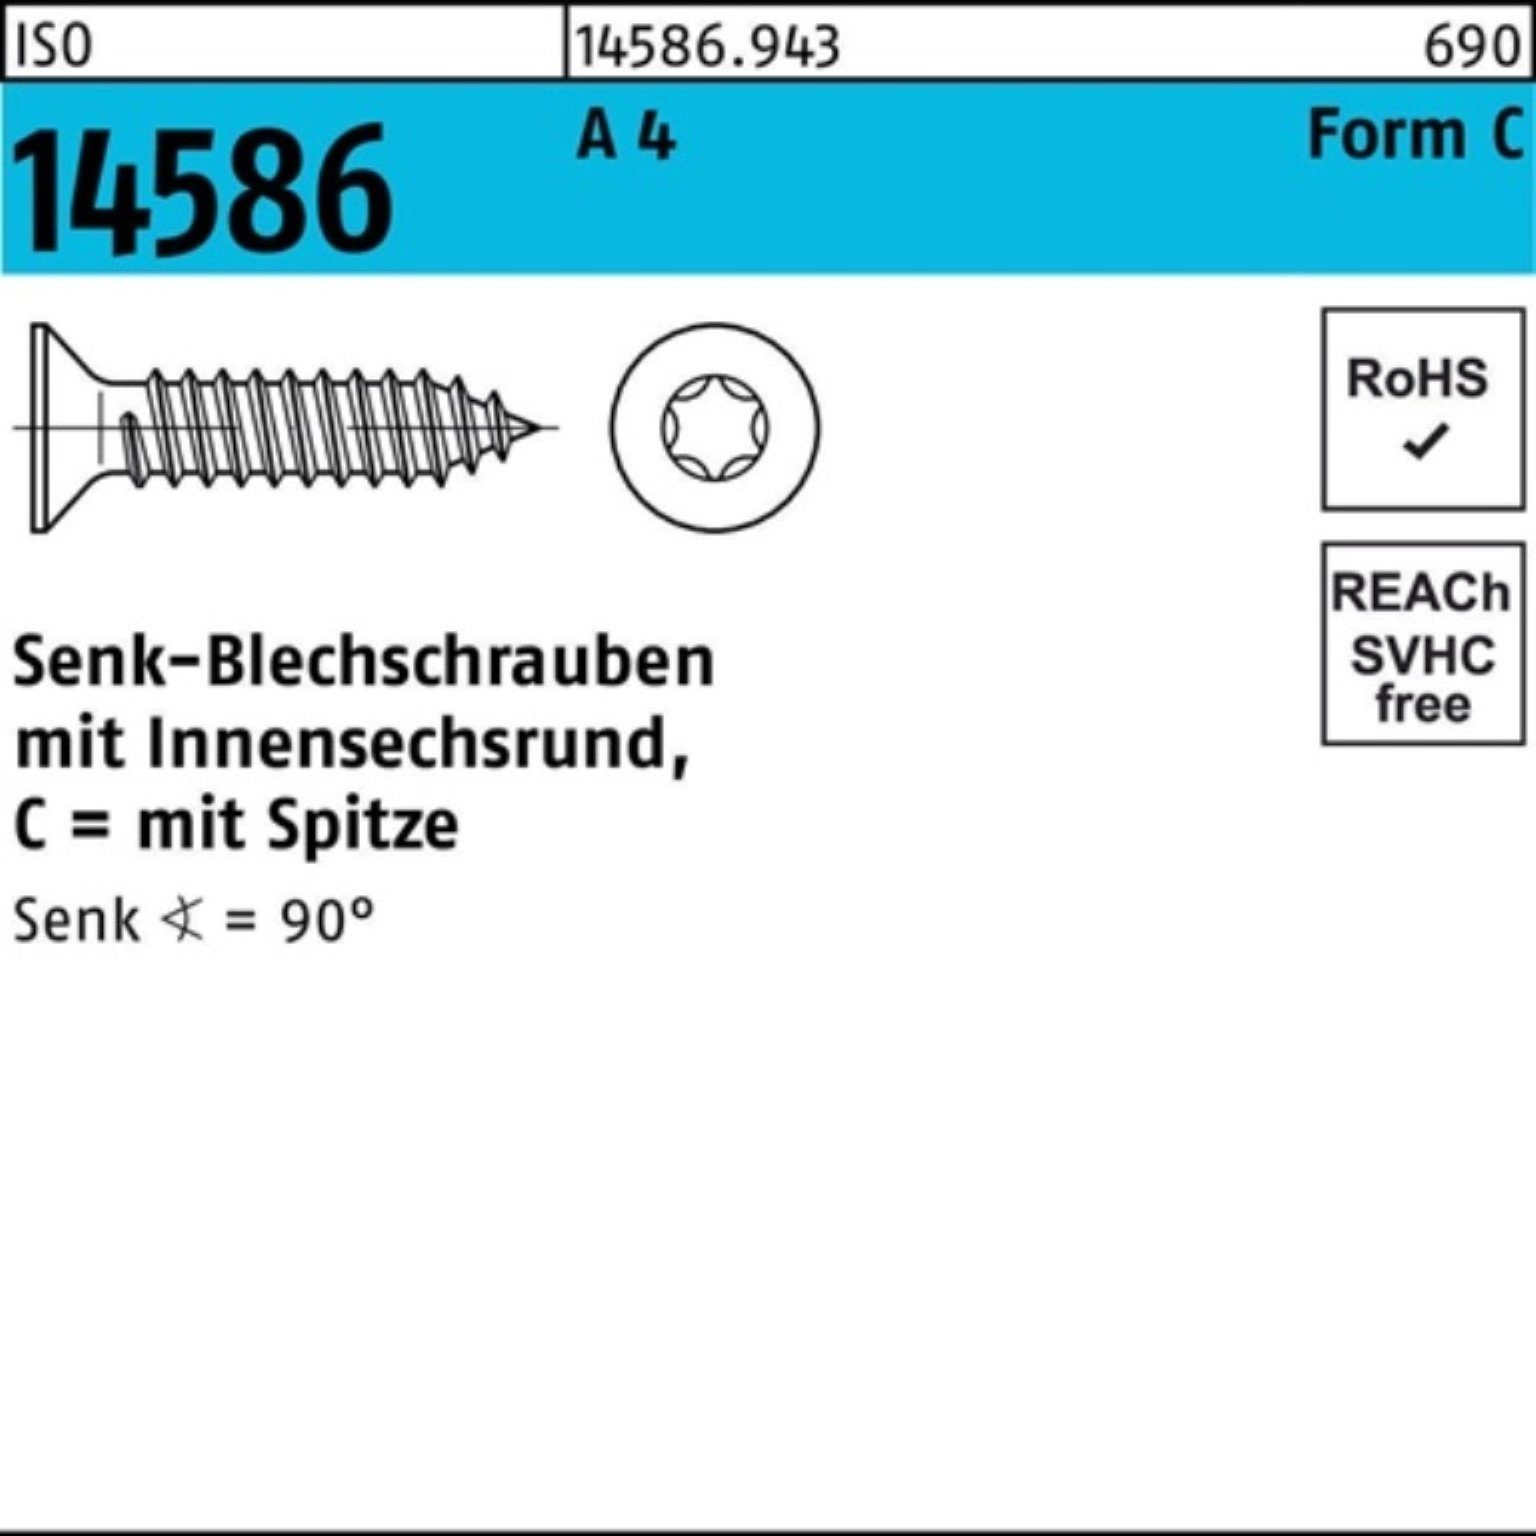 Reyher Schraube 250er Pack Senkblechschraube ISO 14586 ISR/Spitze 5,5x 45-T25 A 4 250